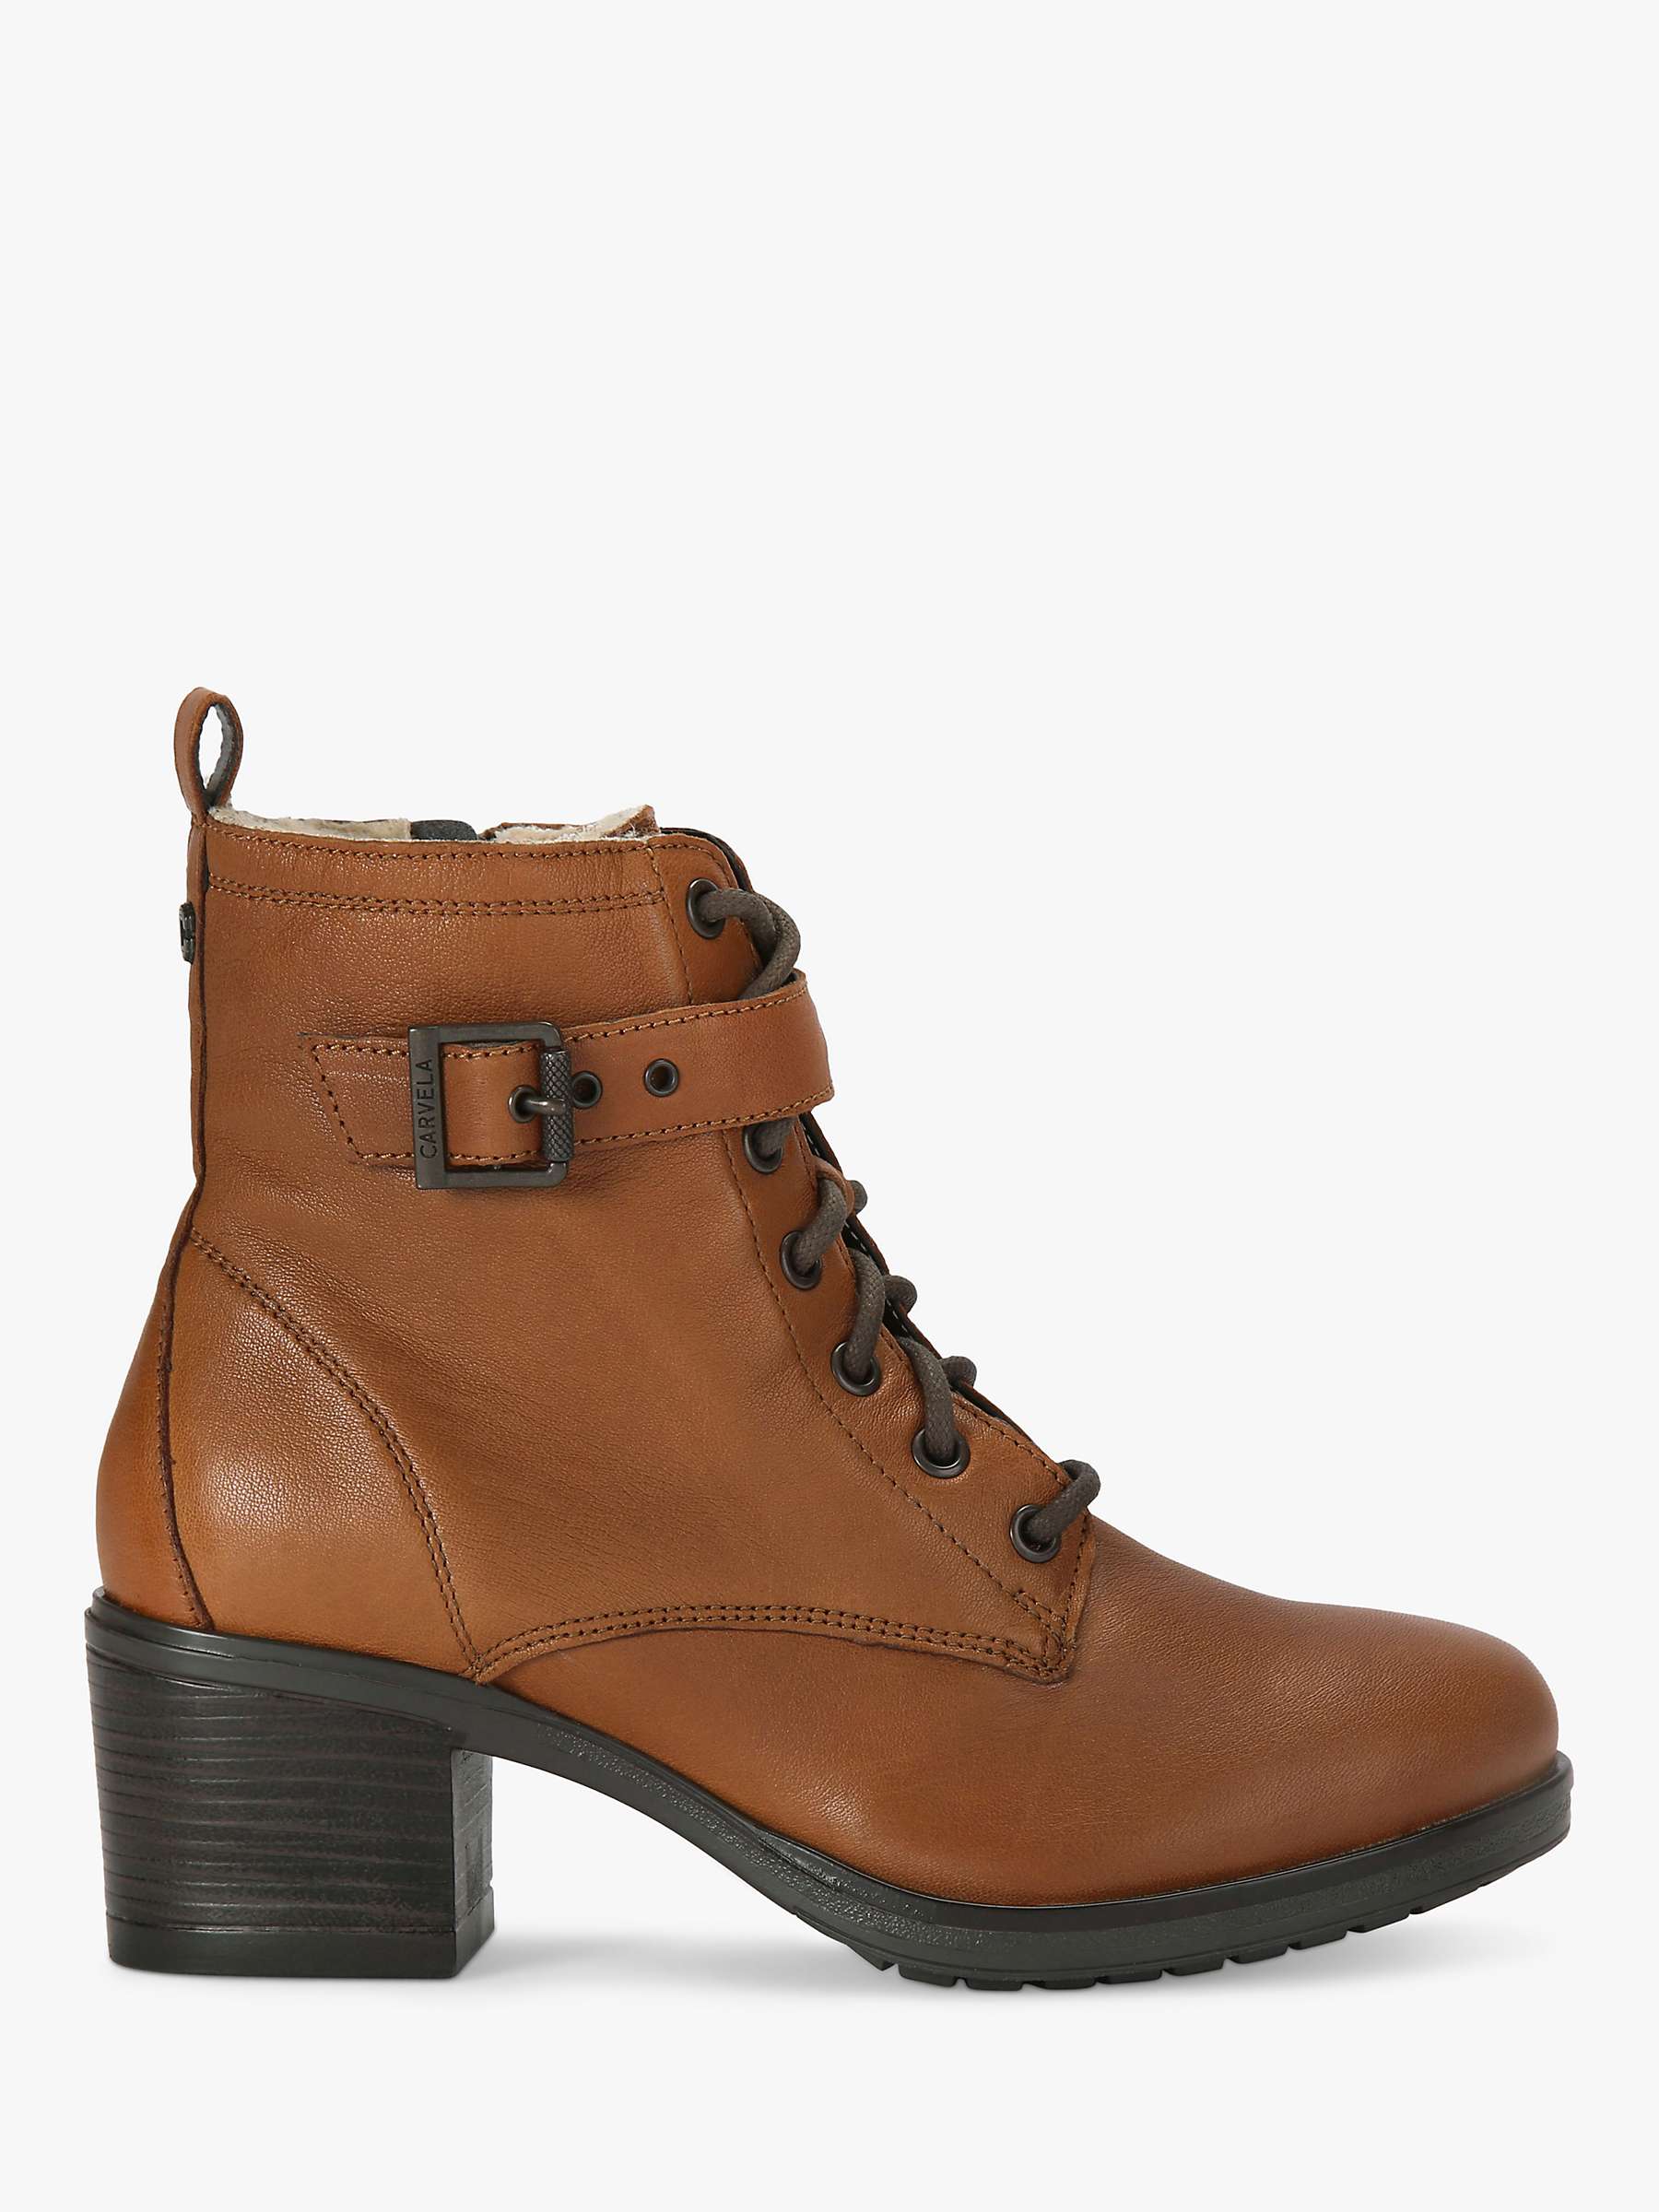 Buy Carvela Snug Leather Heeled Ankle Boots, Tan Online at johnlewis.com